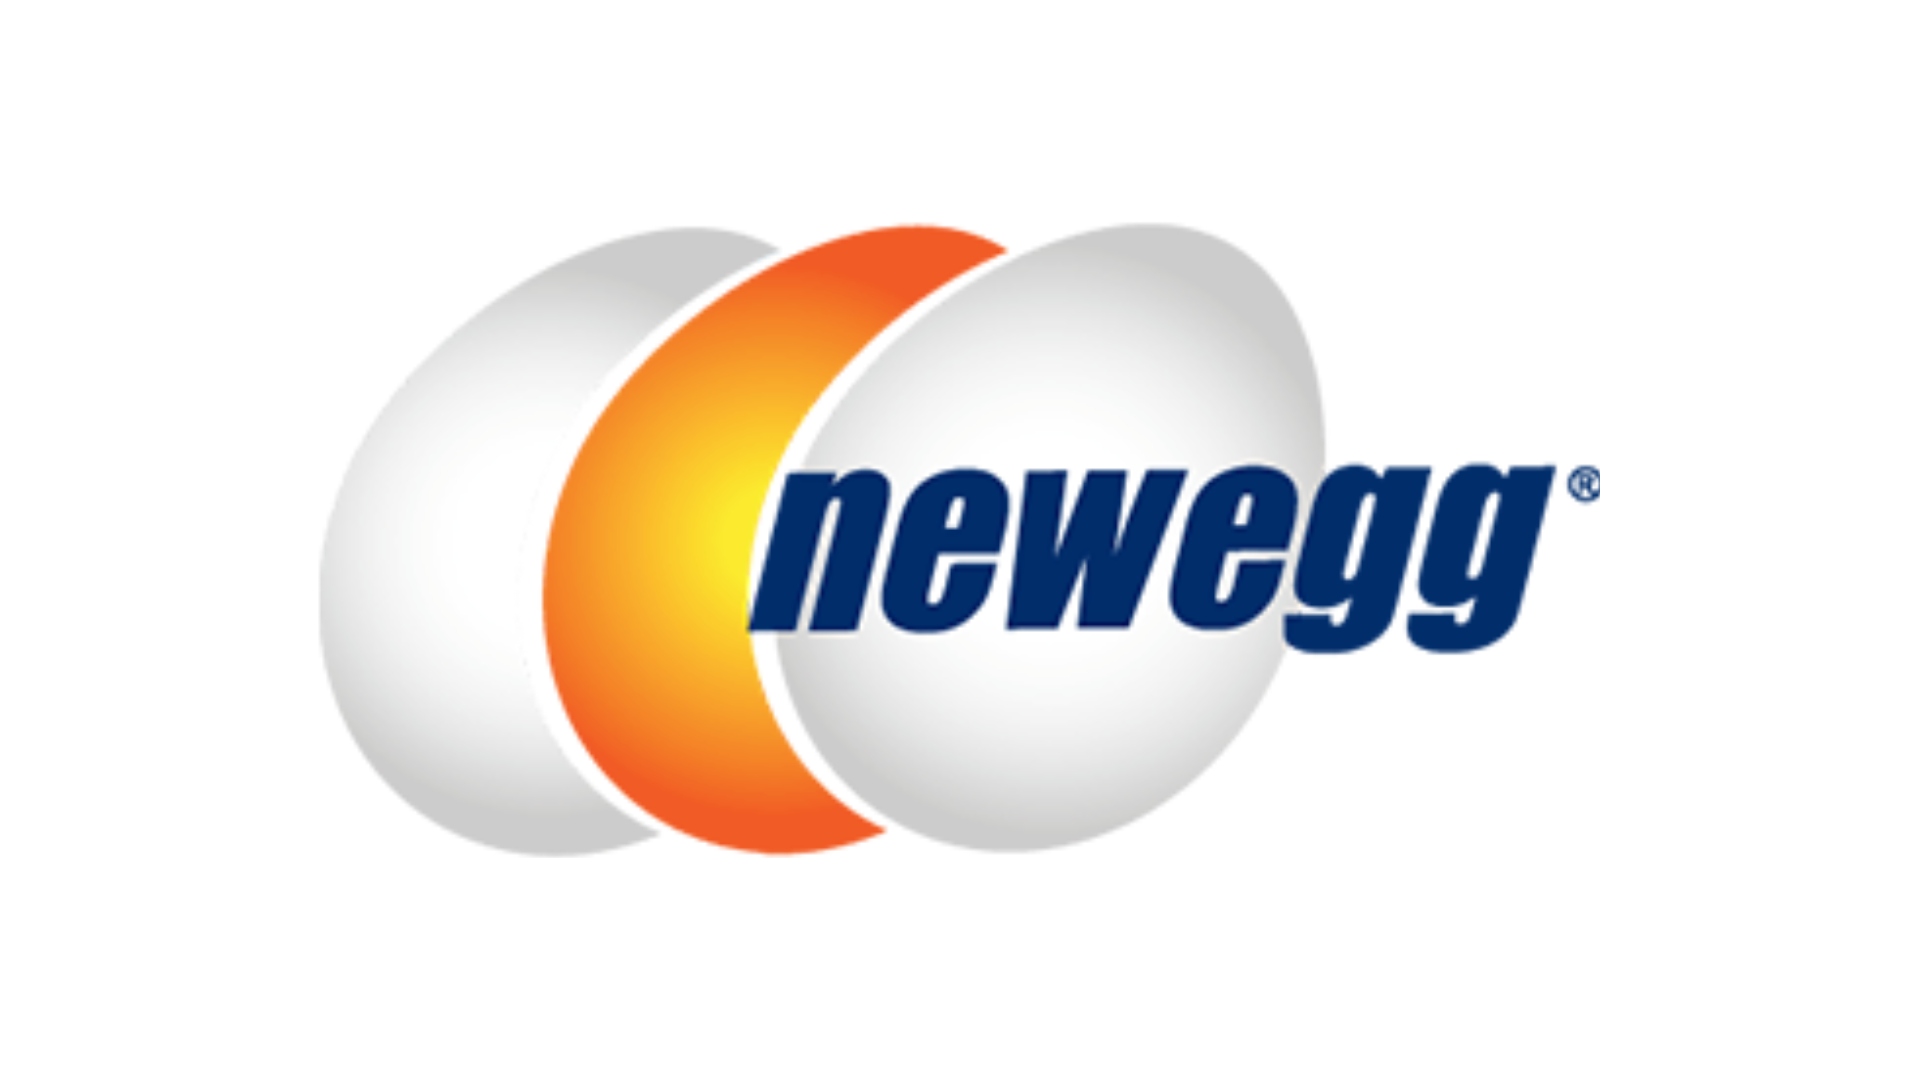 אתרי האינטרנט הטובים ביותר לבניית מחשב מותאם אישית, מספר 2: Newegg. הלוגו הוא על רקע לבן